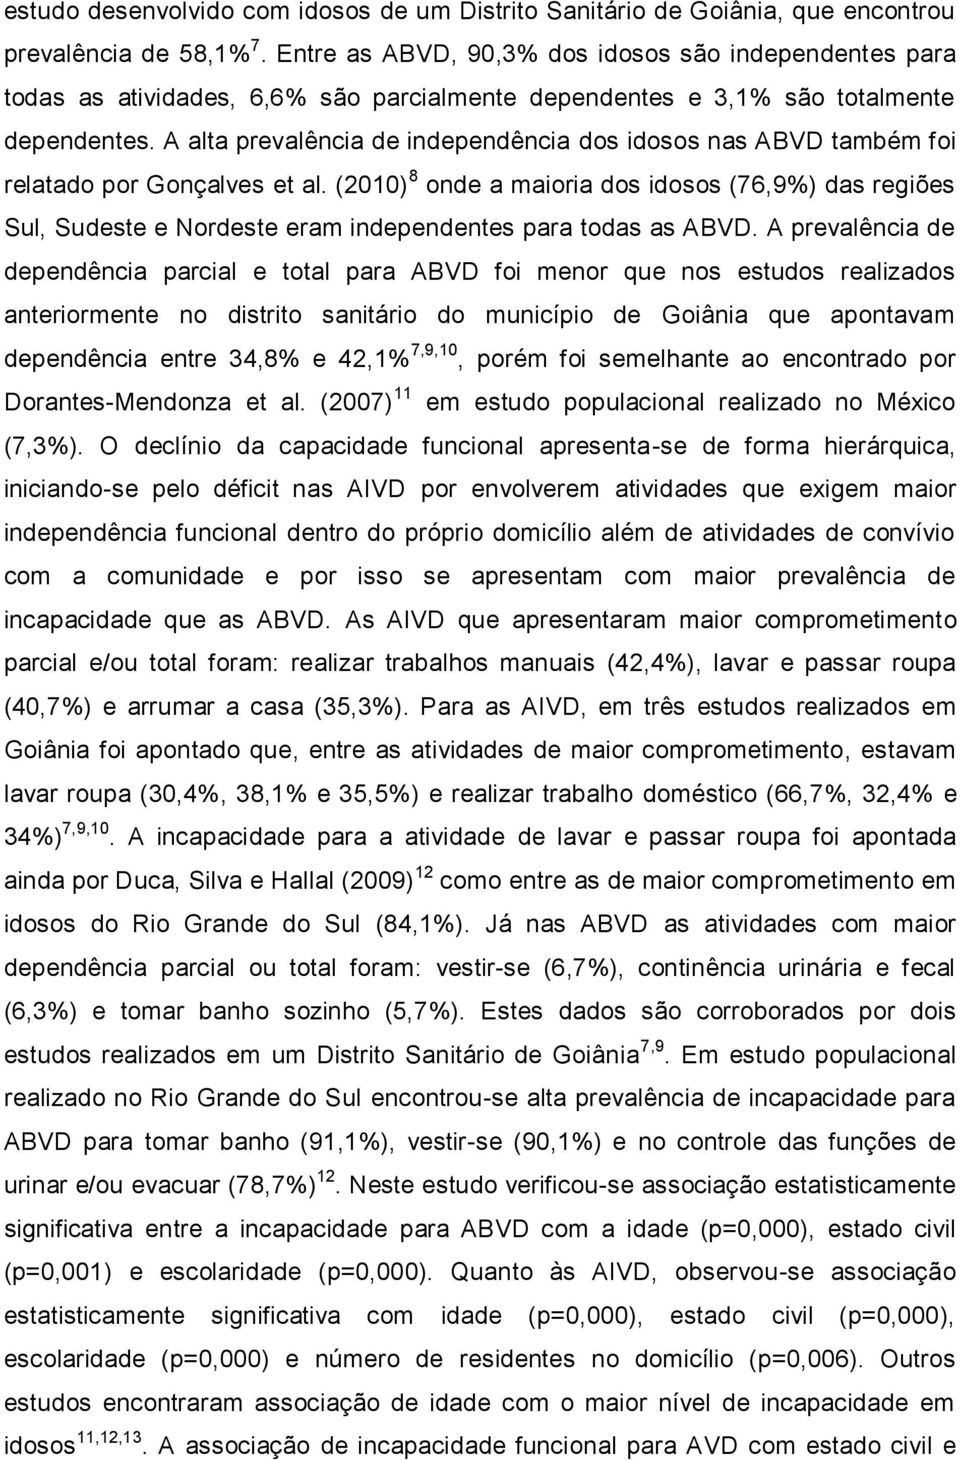 A alta prevalência de independência dos idosos nas ABVD também foi relatado por Gonçalves et al.